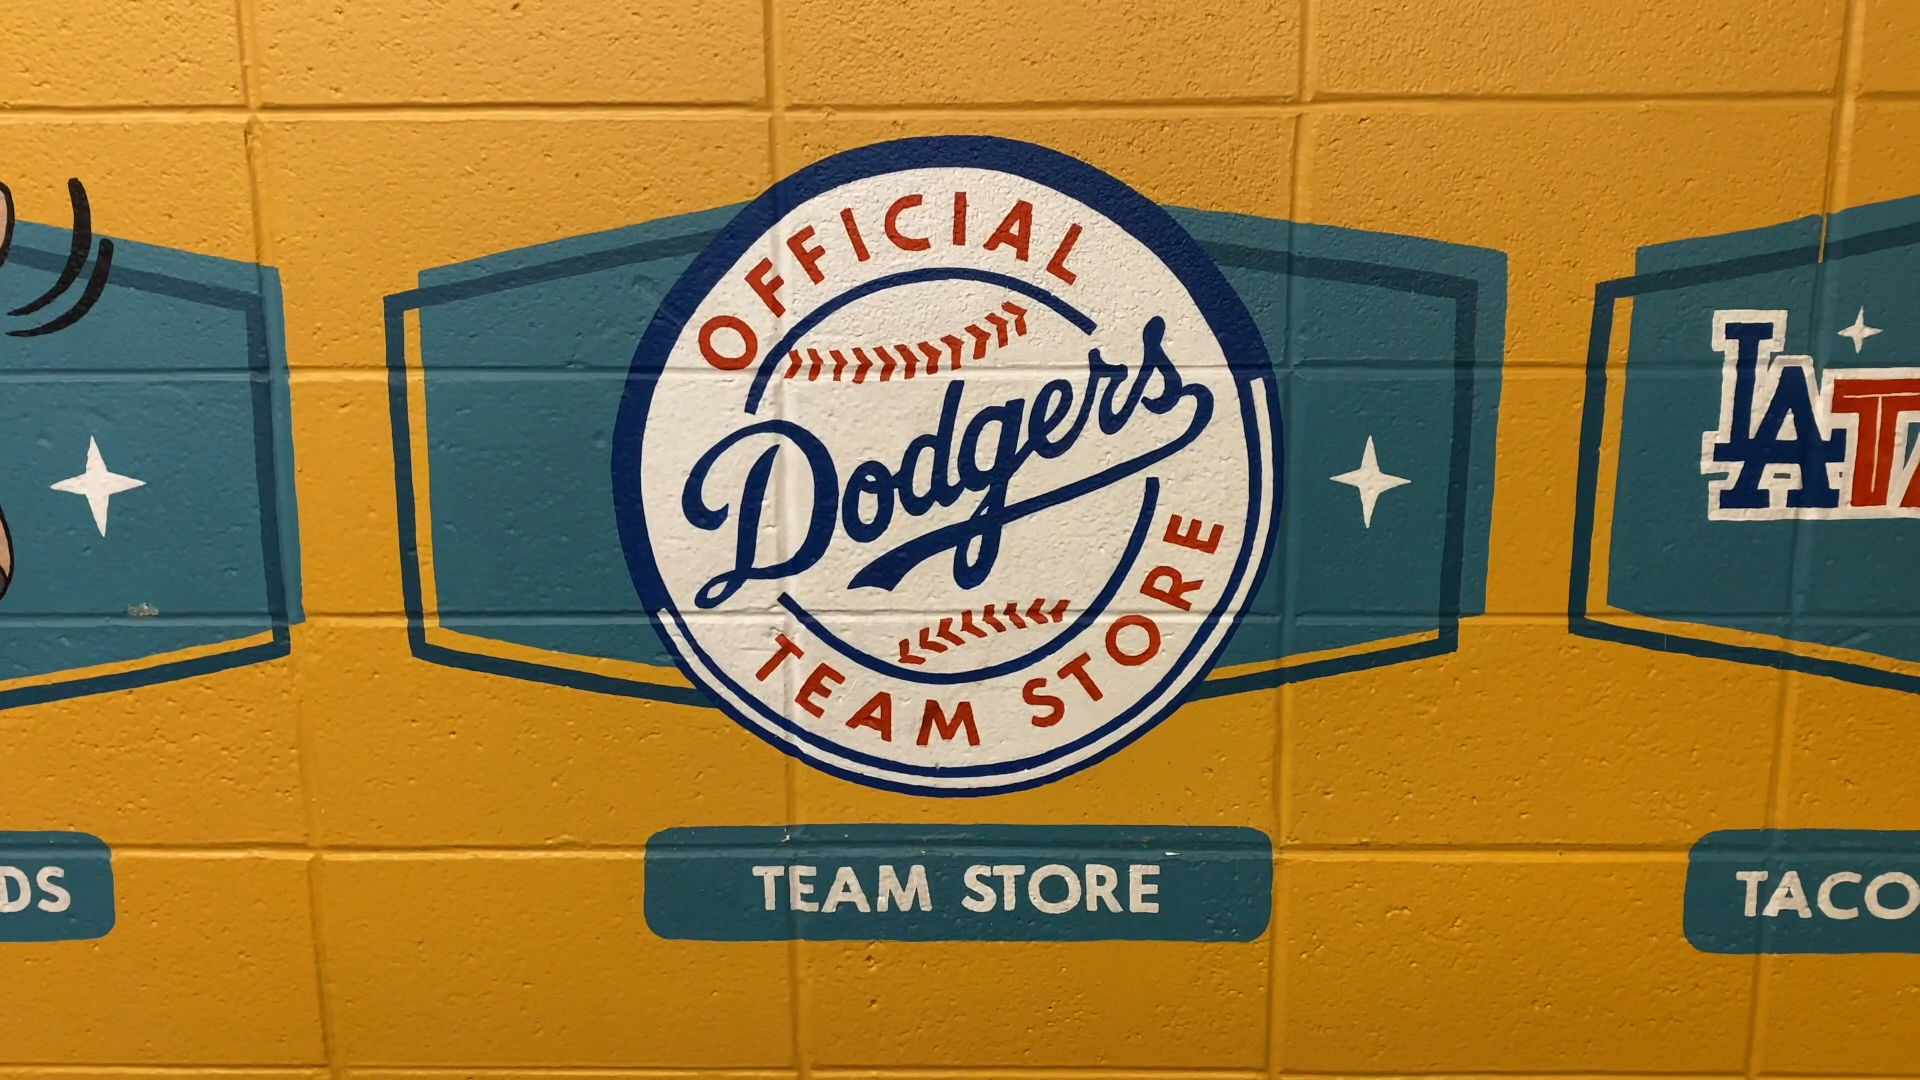 Team Store Dodger Stadium